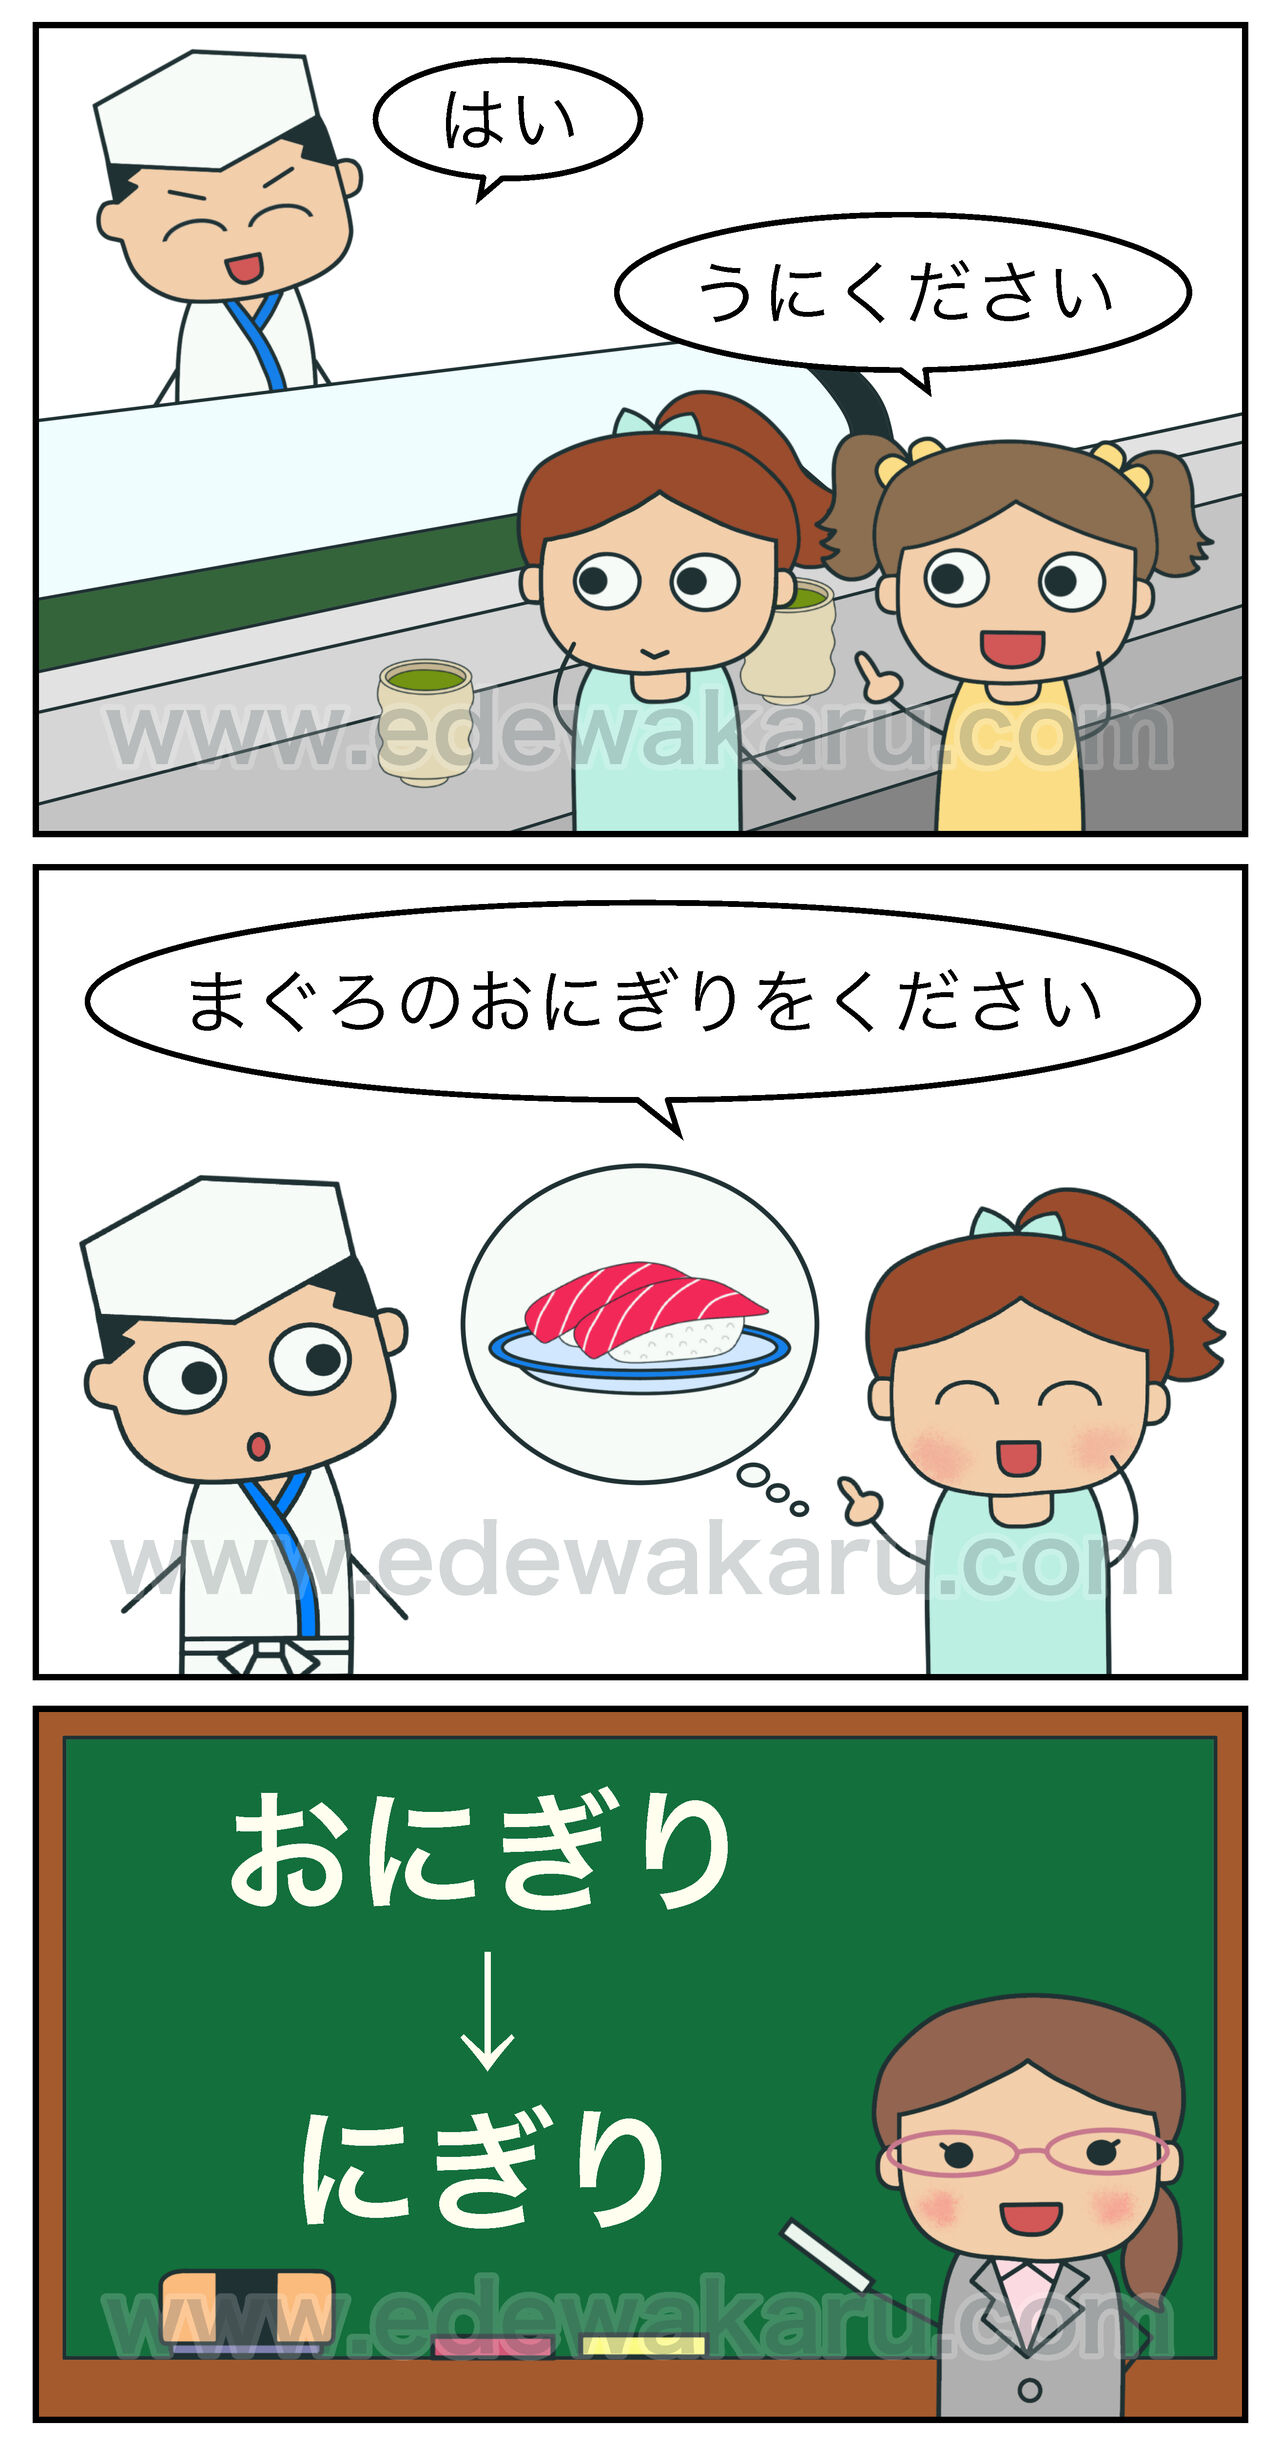 まぐろのおにぎりをください 間違った日本語 絵でわかる日本語